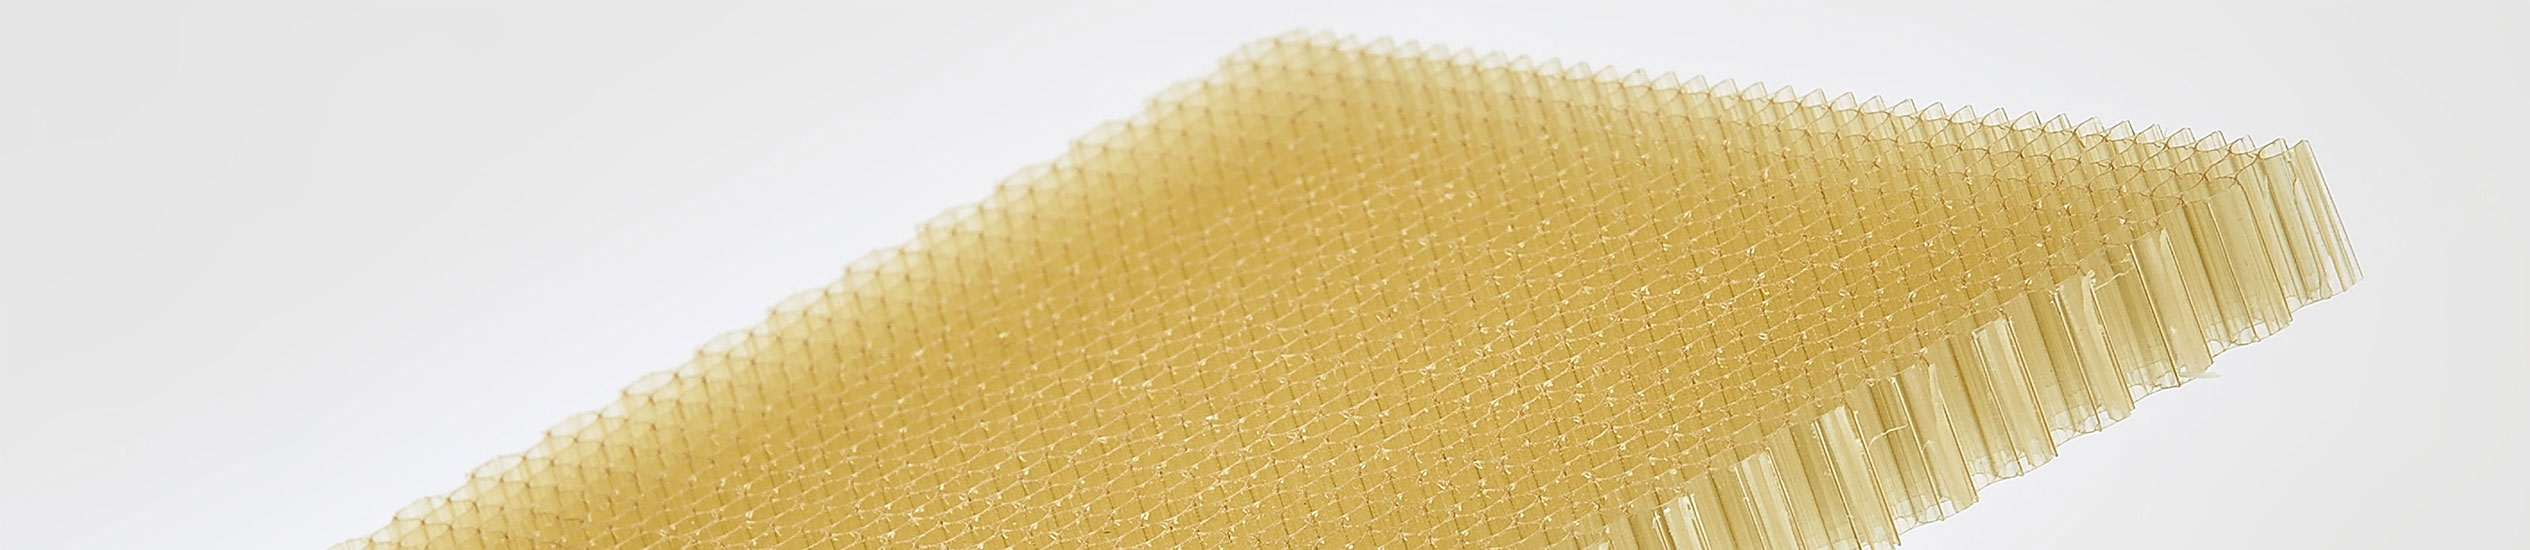 CEL propose une large gamme de matériaux d'âme : nid d'abeille en aluminium, thermoplastiques, papier aramide et mousses. Ces matériaux peuvent être utilisés